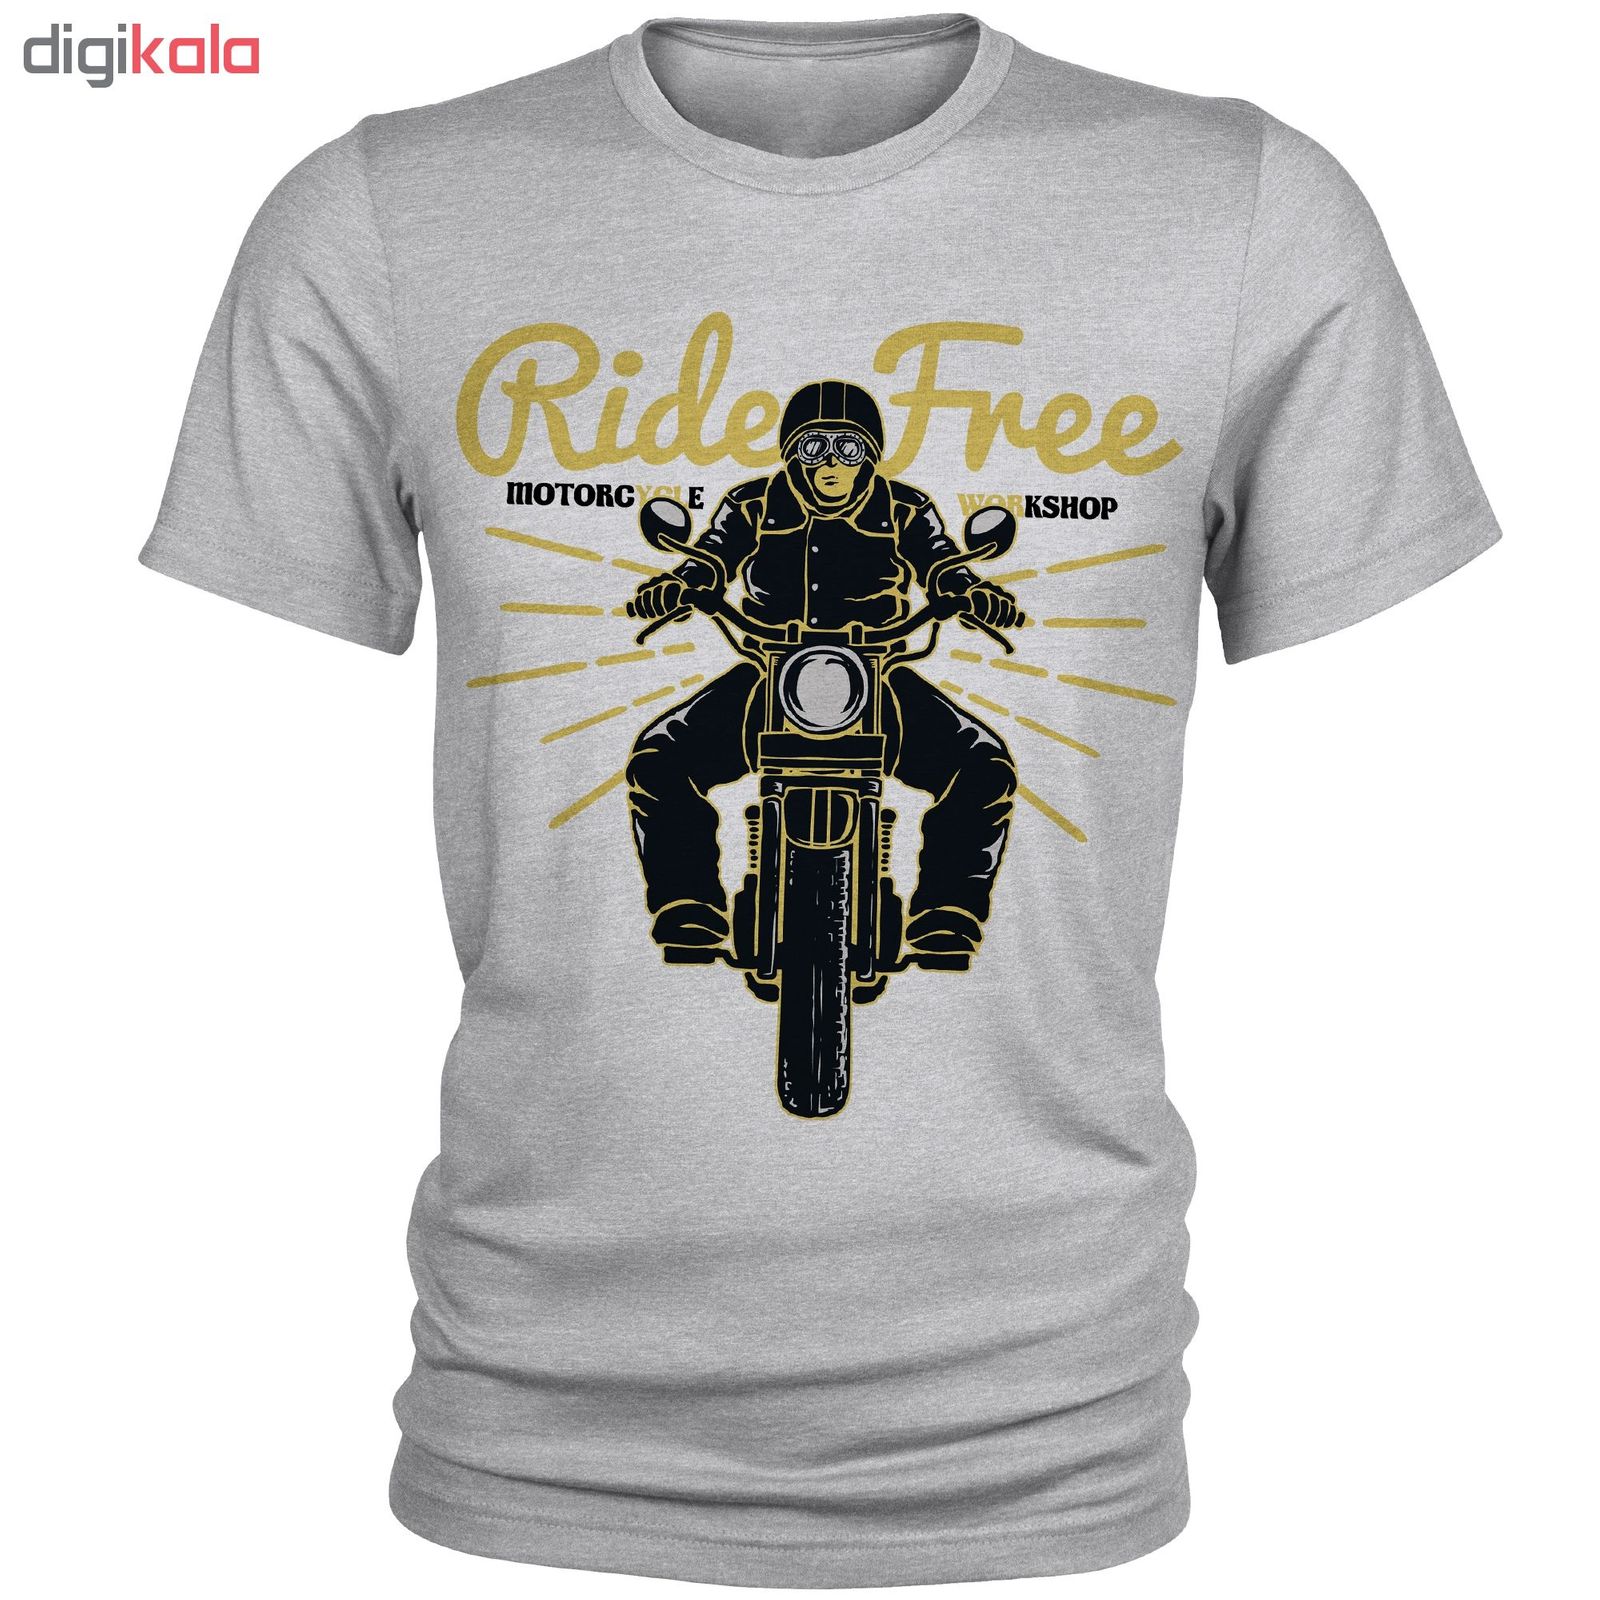 تی شرت مردانه مدل Ride Free کد A185